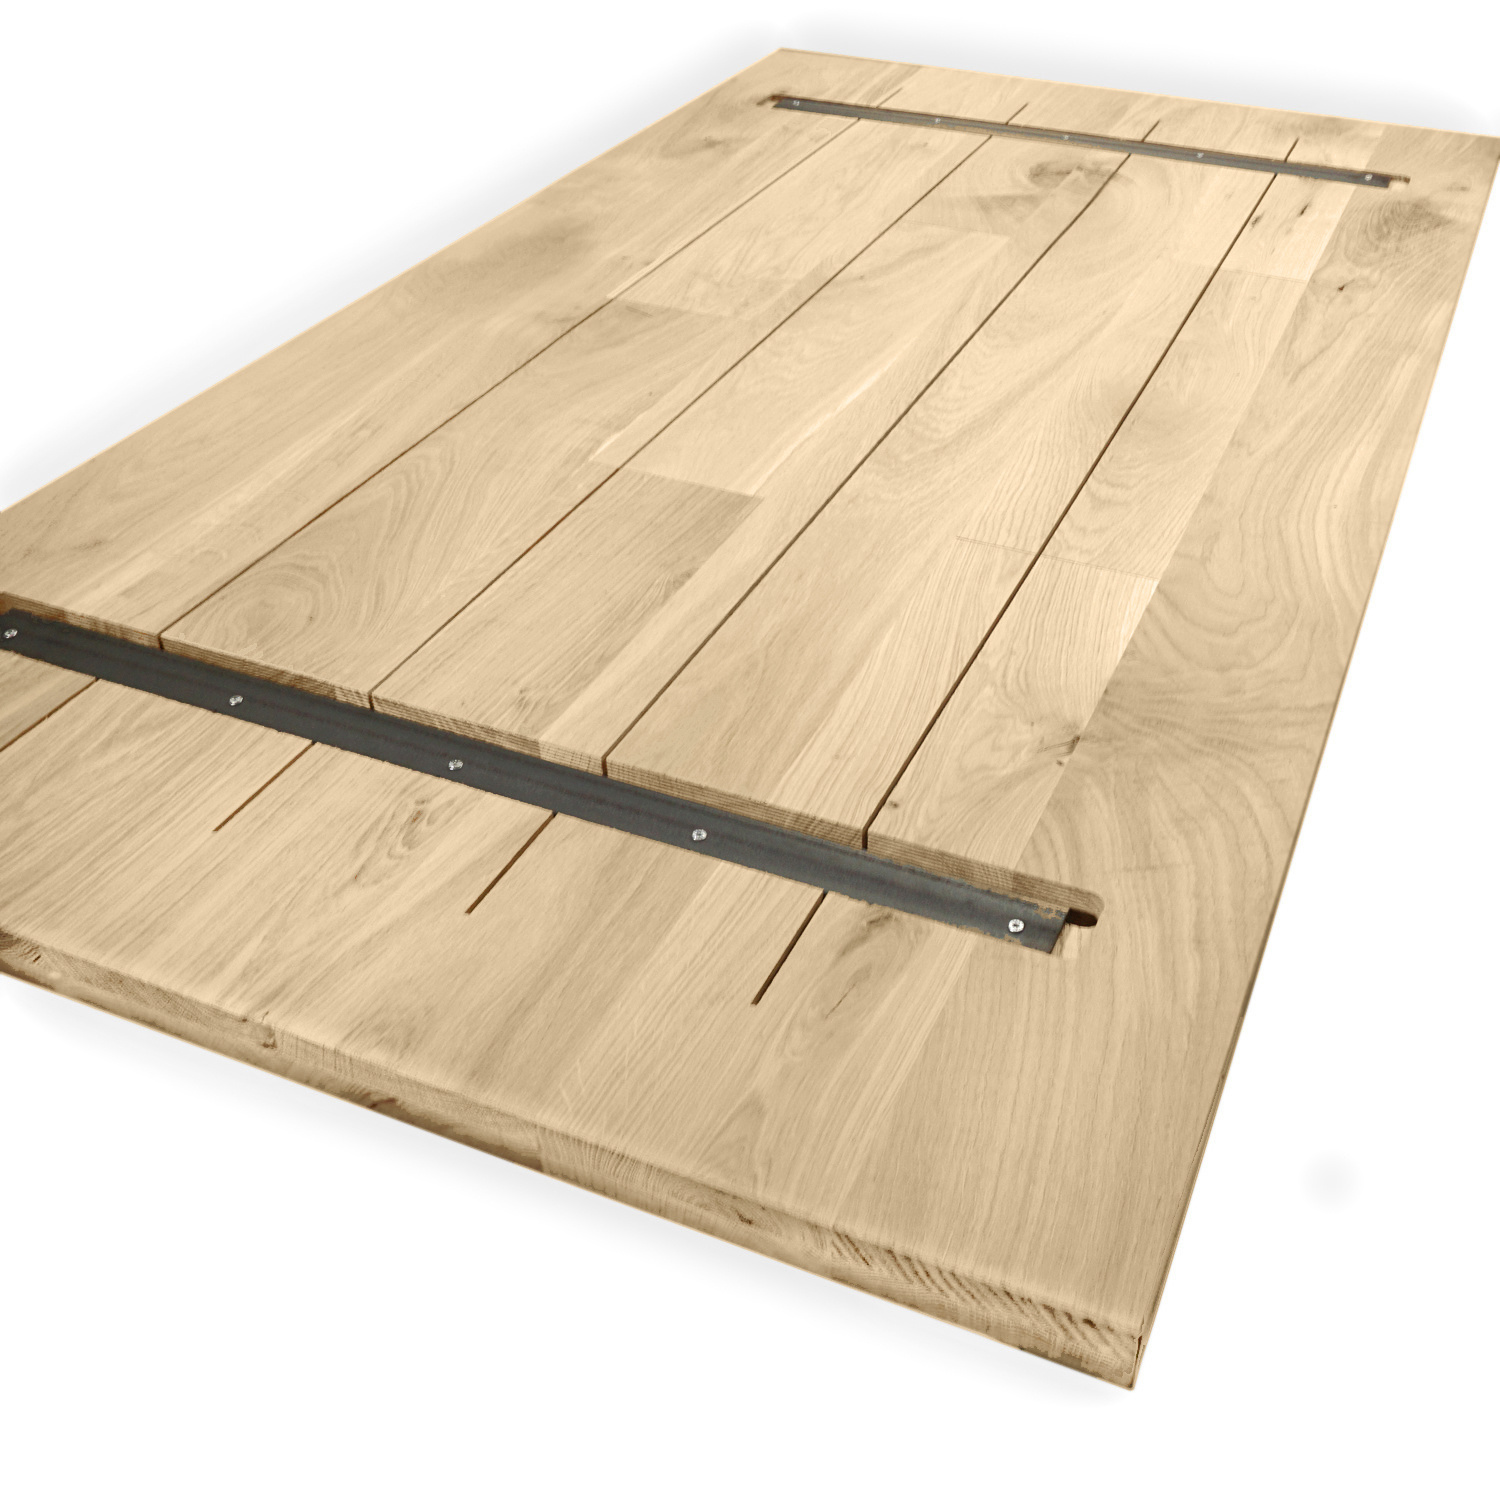  Eiken tafelblad op maat - 2,7 cm dik (1-laag) - foutvrij Europees eikenhout - met brede lamellen (circa 10-12 cm) - verlijmd kd 8-12% - 50-120x50-248 cm